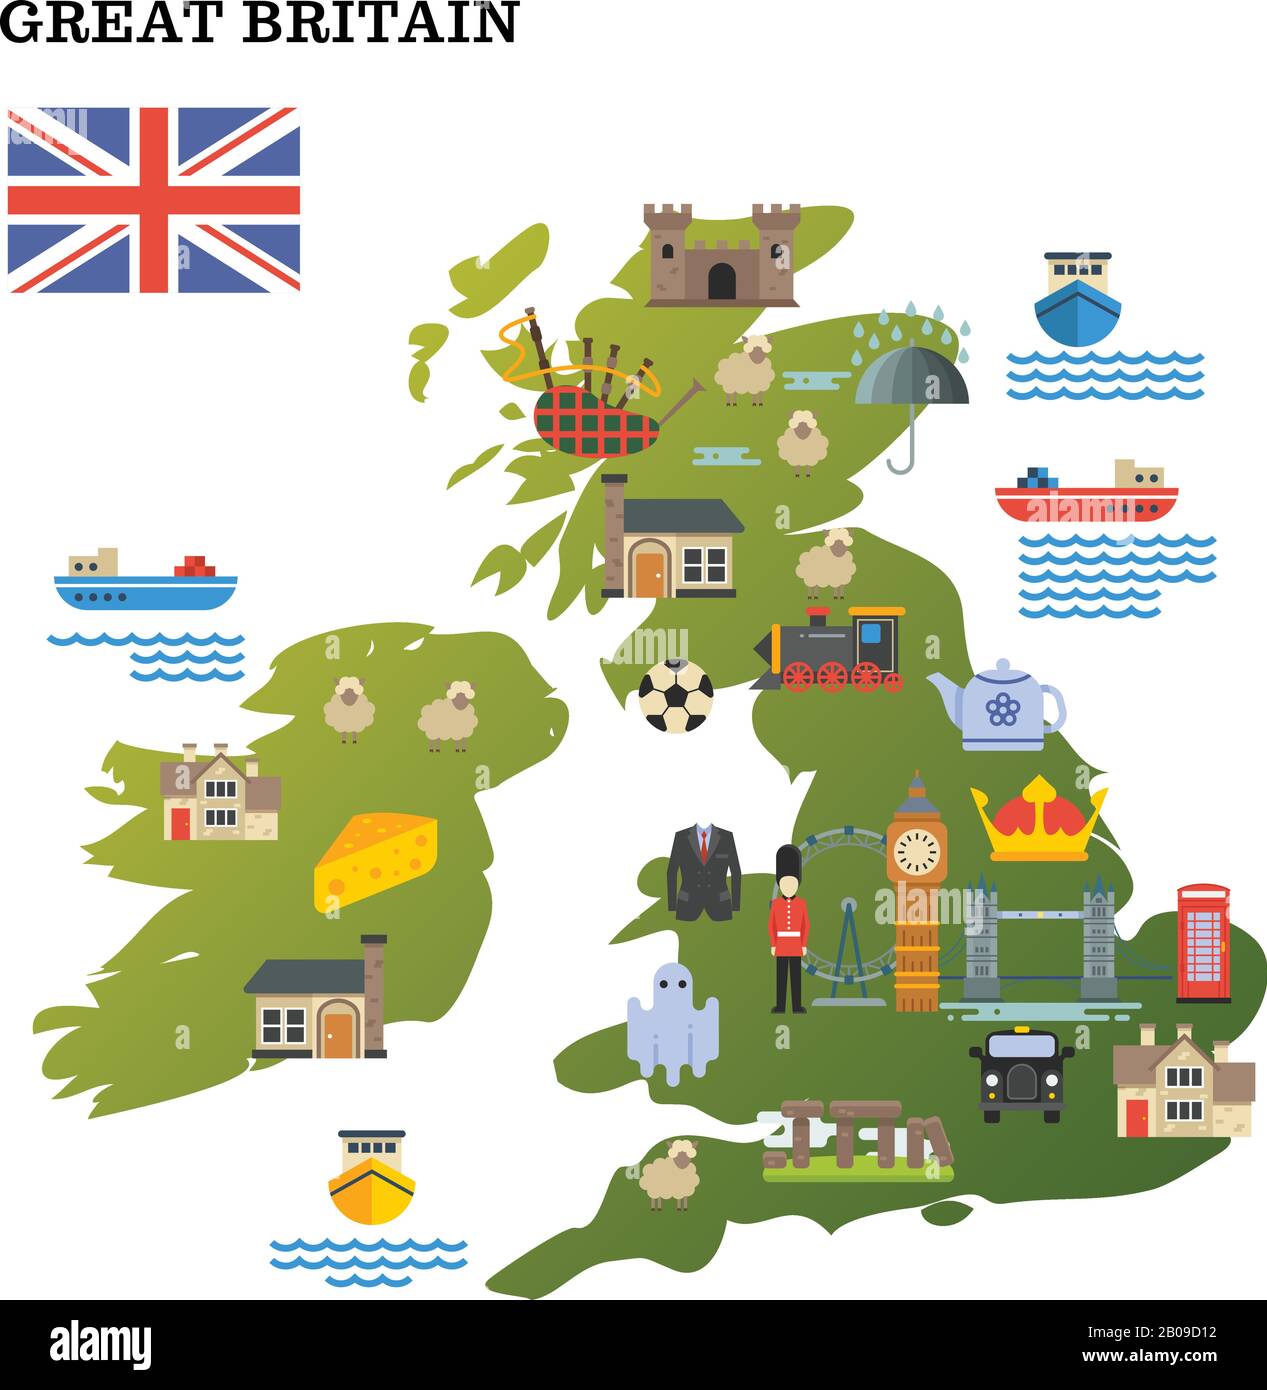 UK Landmarks Map